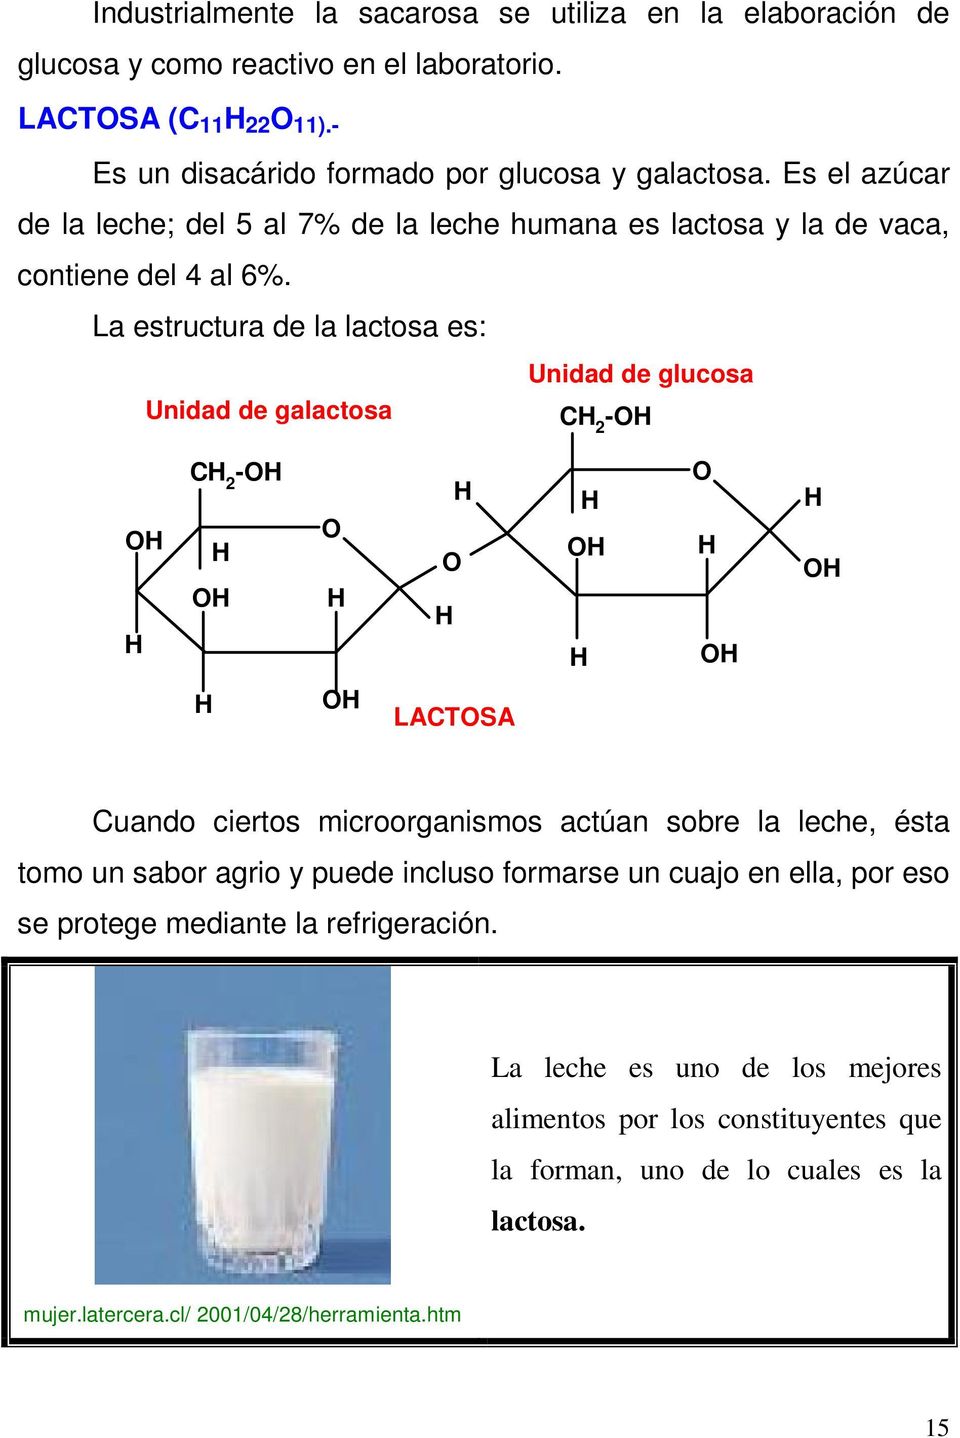 La estructura de la lactosa es: Unidad de glucosa Unidad de galactosa C 2 -O O C 2 -O O O O O O O O O LACTOSA Cuando ciertos microorganismos actúan sobre la leche, ésta tomo un